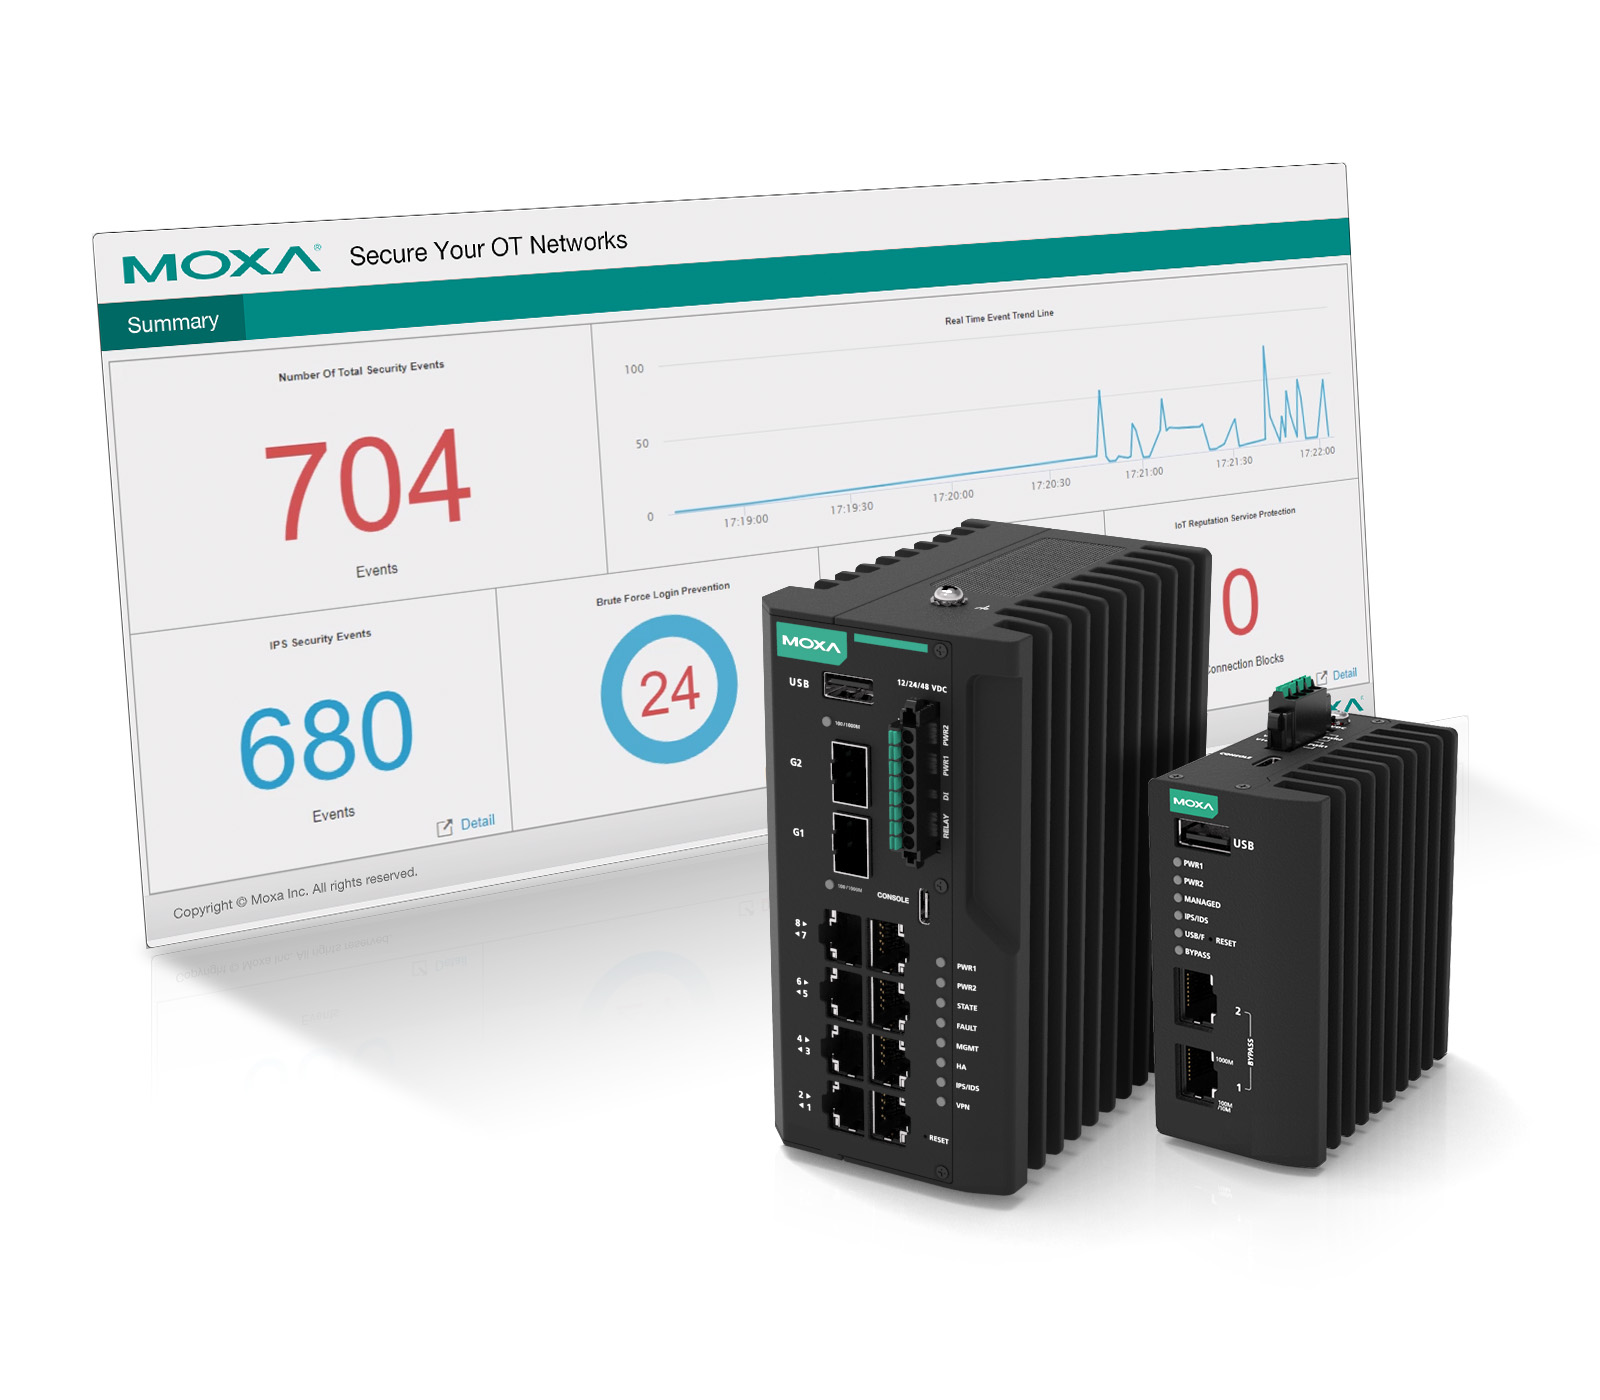 Moxa stellt Lösung für die industrielle Netzwerksicherheit vor